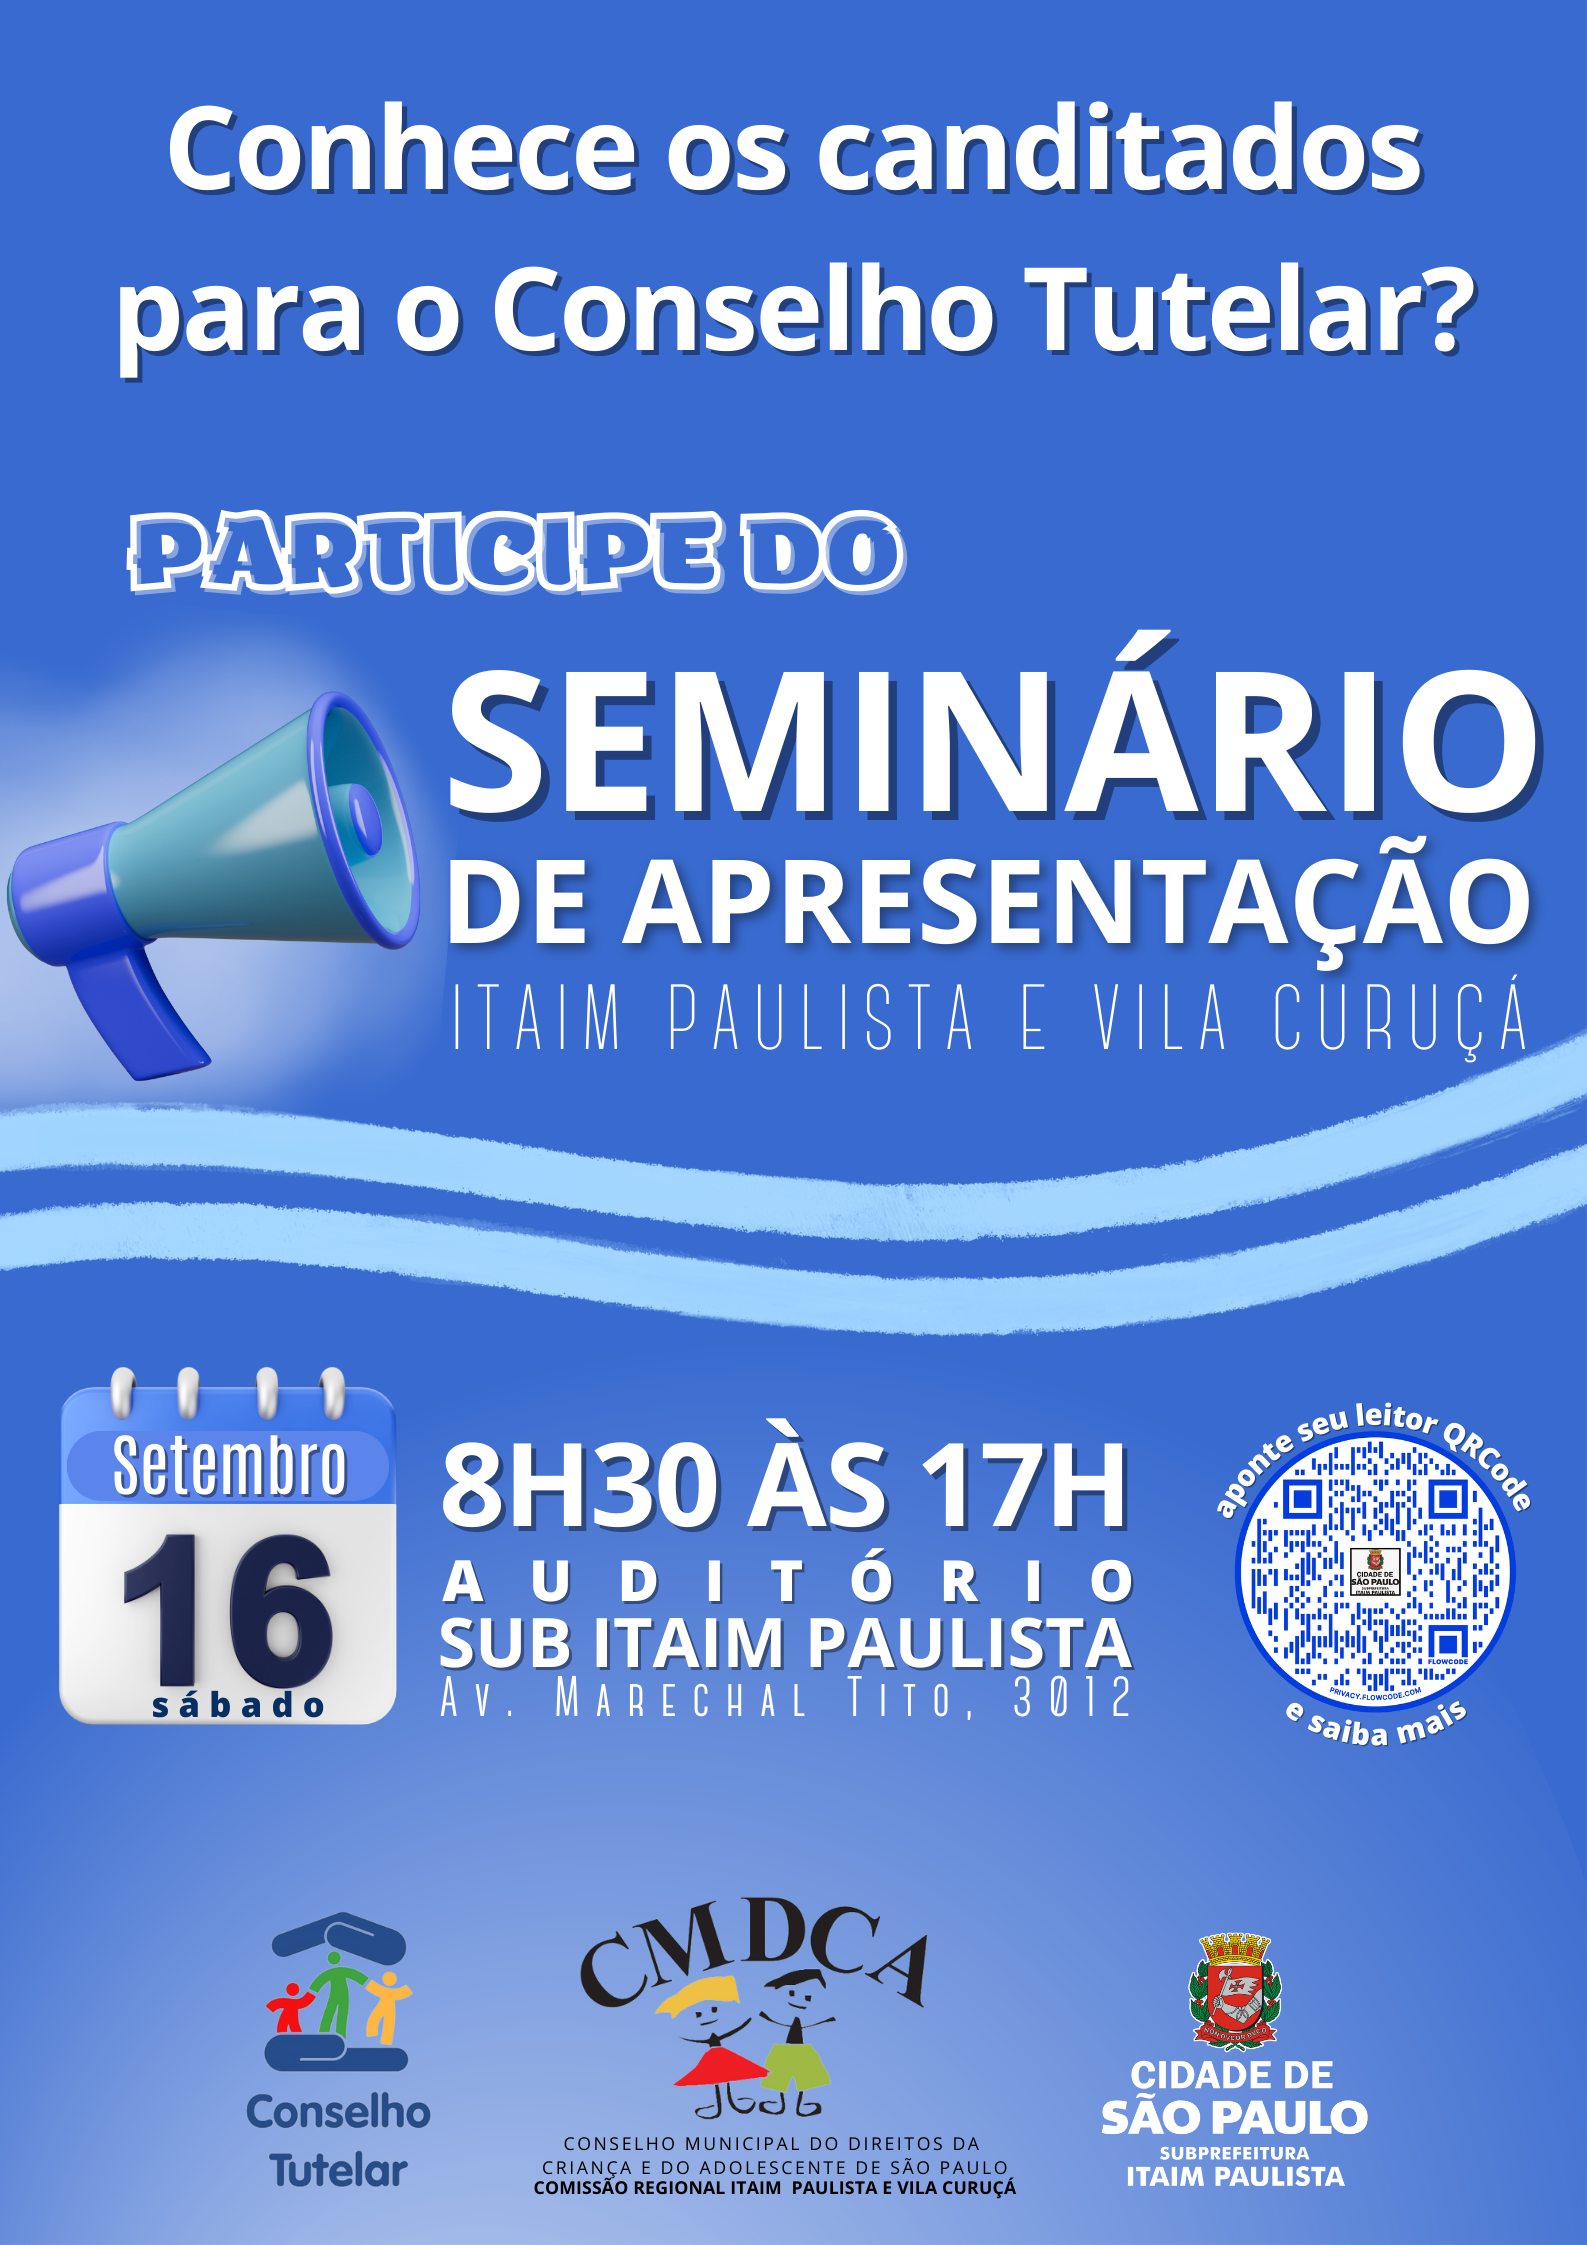 Cartaz de fundo azul com título de indagação "Conhece os candidatos para o Conselho Tutelar?", e mais abaixo as informações de onde e quando será o seminário.